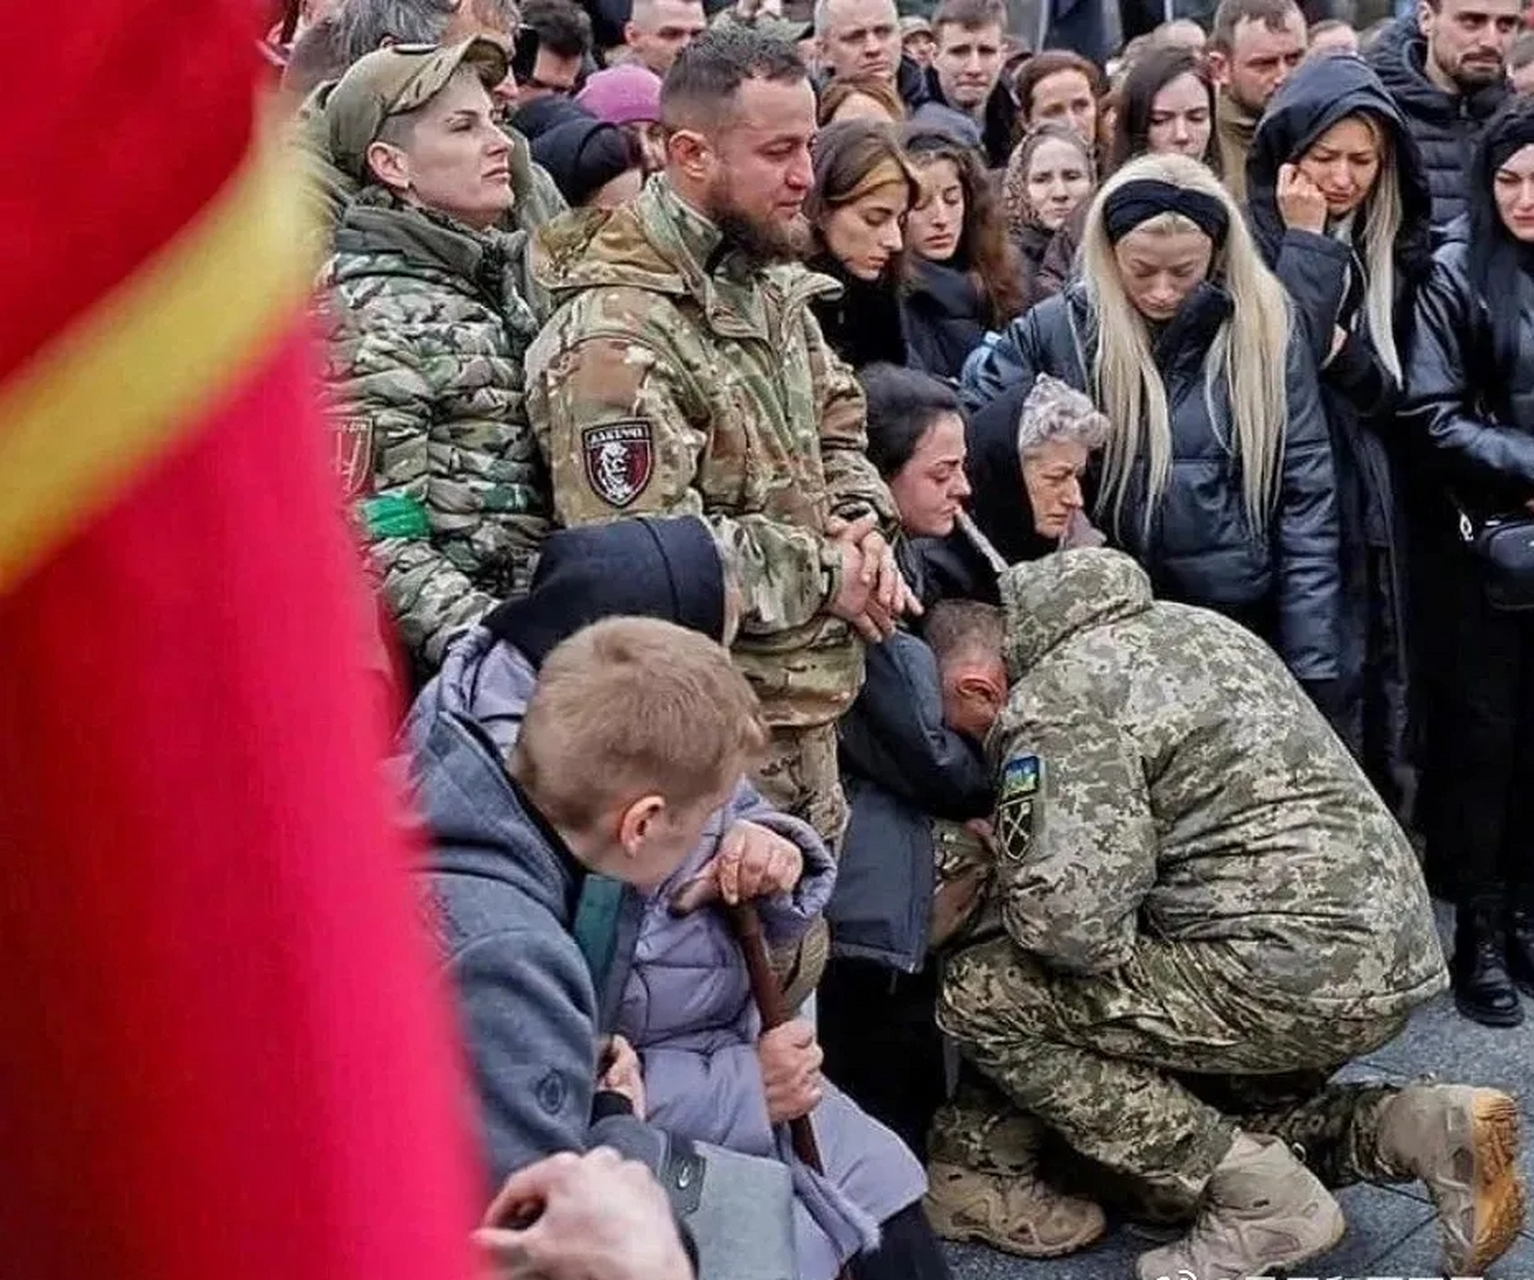 乌克兰武装部队总司令扎卢日尼下跪,把头都埋到了英雄遗孀和母亲的怀